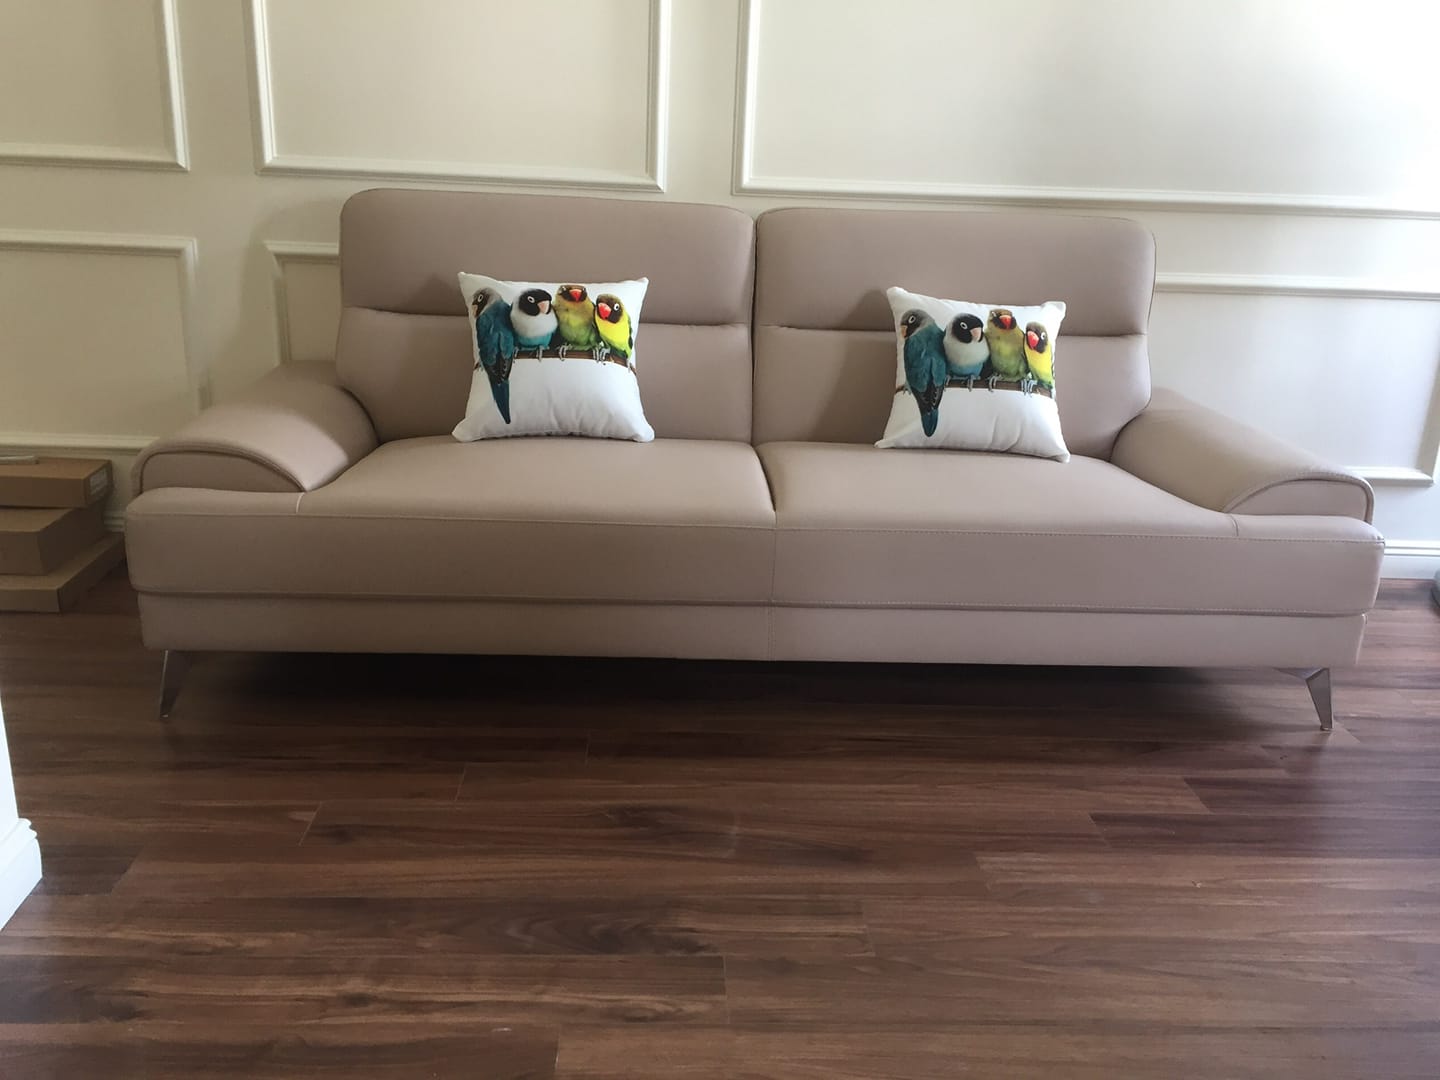 Hãy thư giãn trên một chiếc sofa văng ERADO với thiết kế hiện đại, sang trọng và thoải mái nhất. Hãy xem ảnh để tưởng tượng một không gian sống Thượng Hạng.